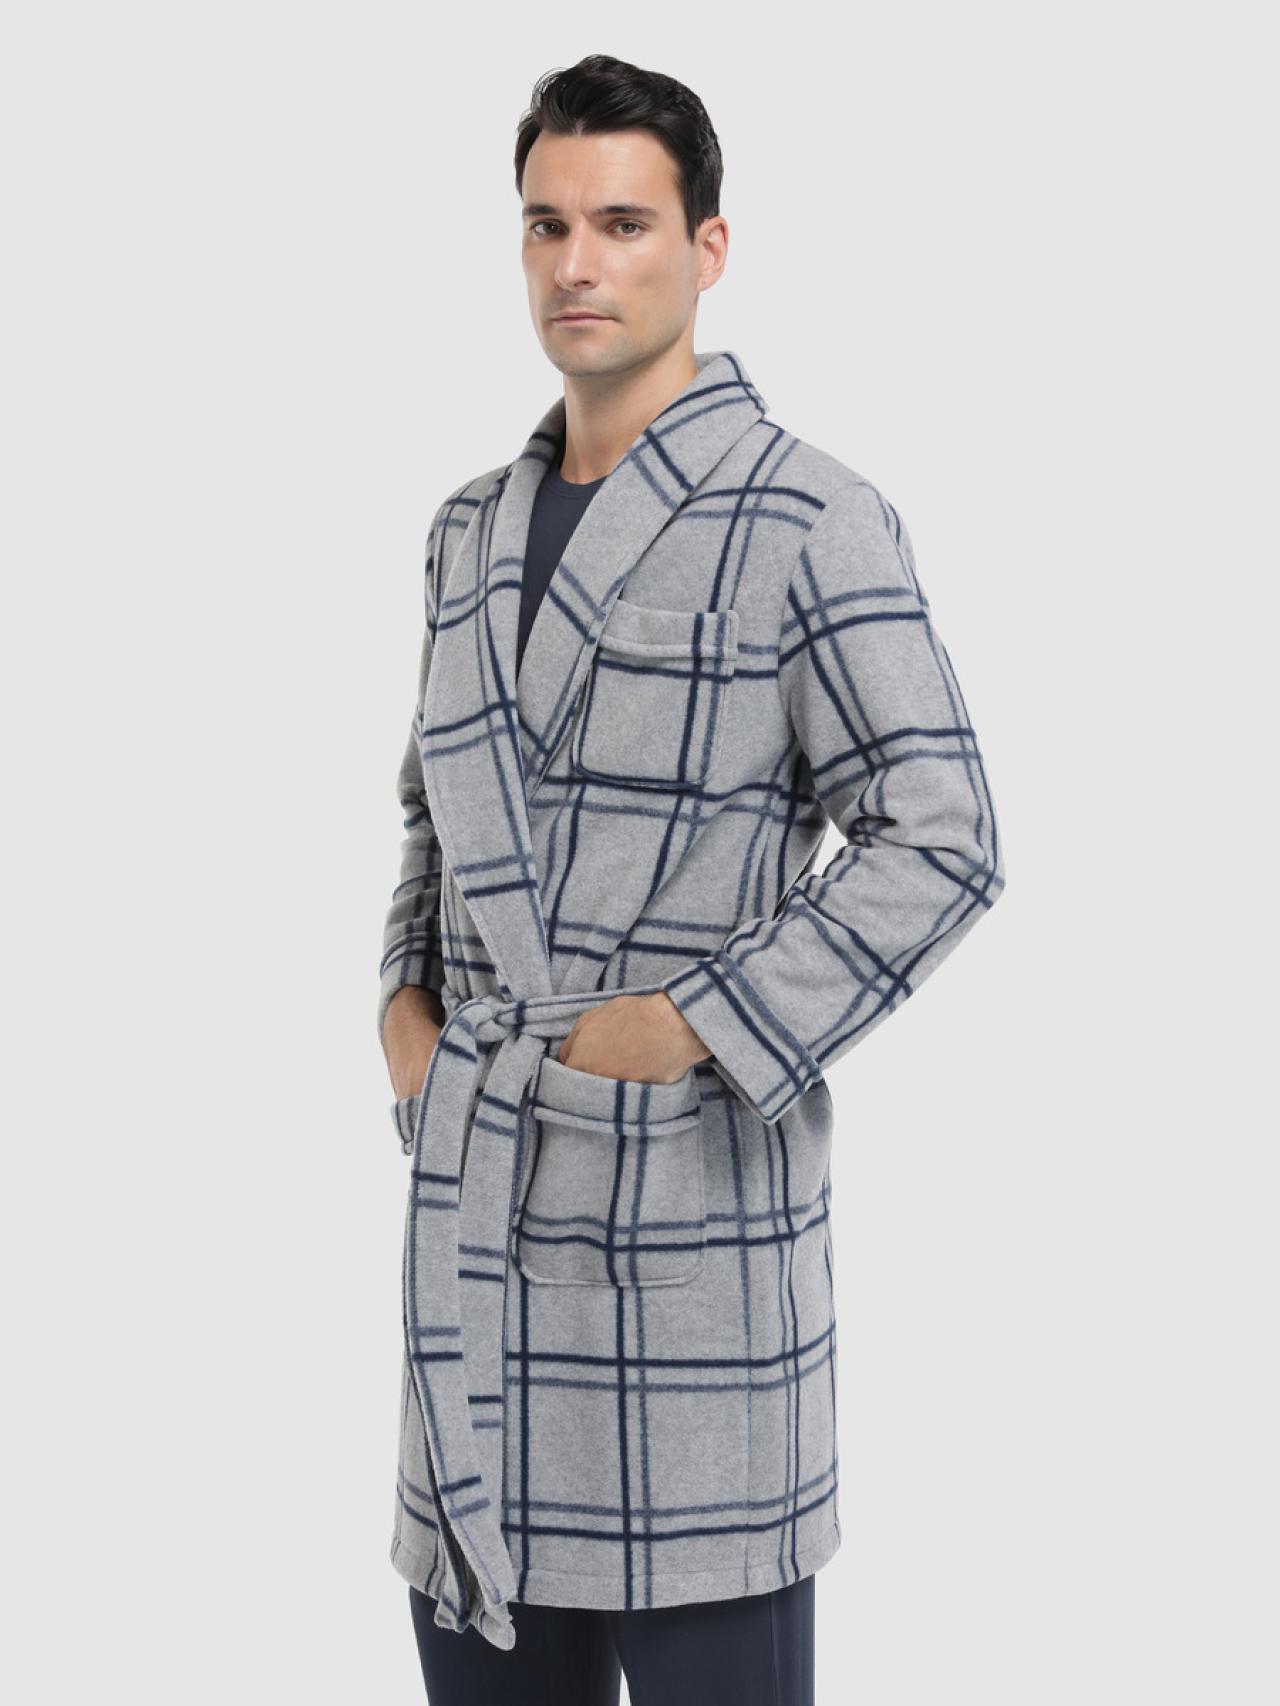 Estos son los 10 pijamas de hombre ir la moda hasta en la cama